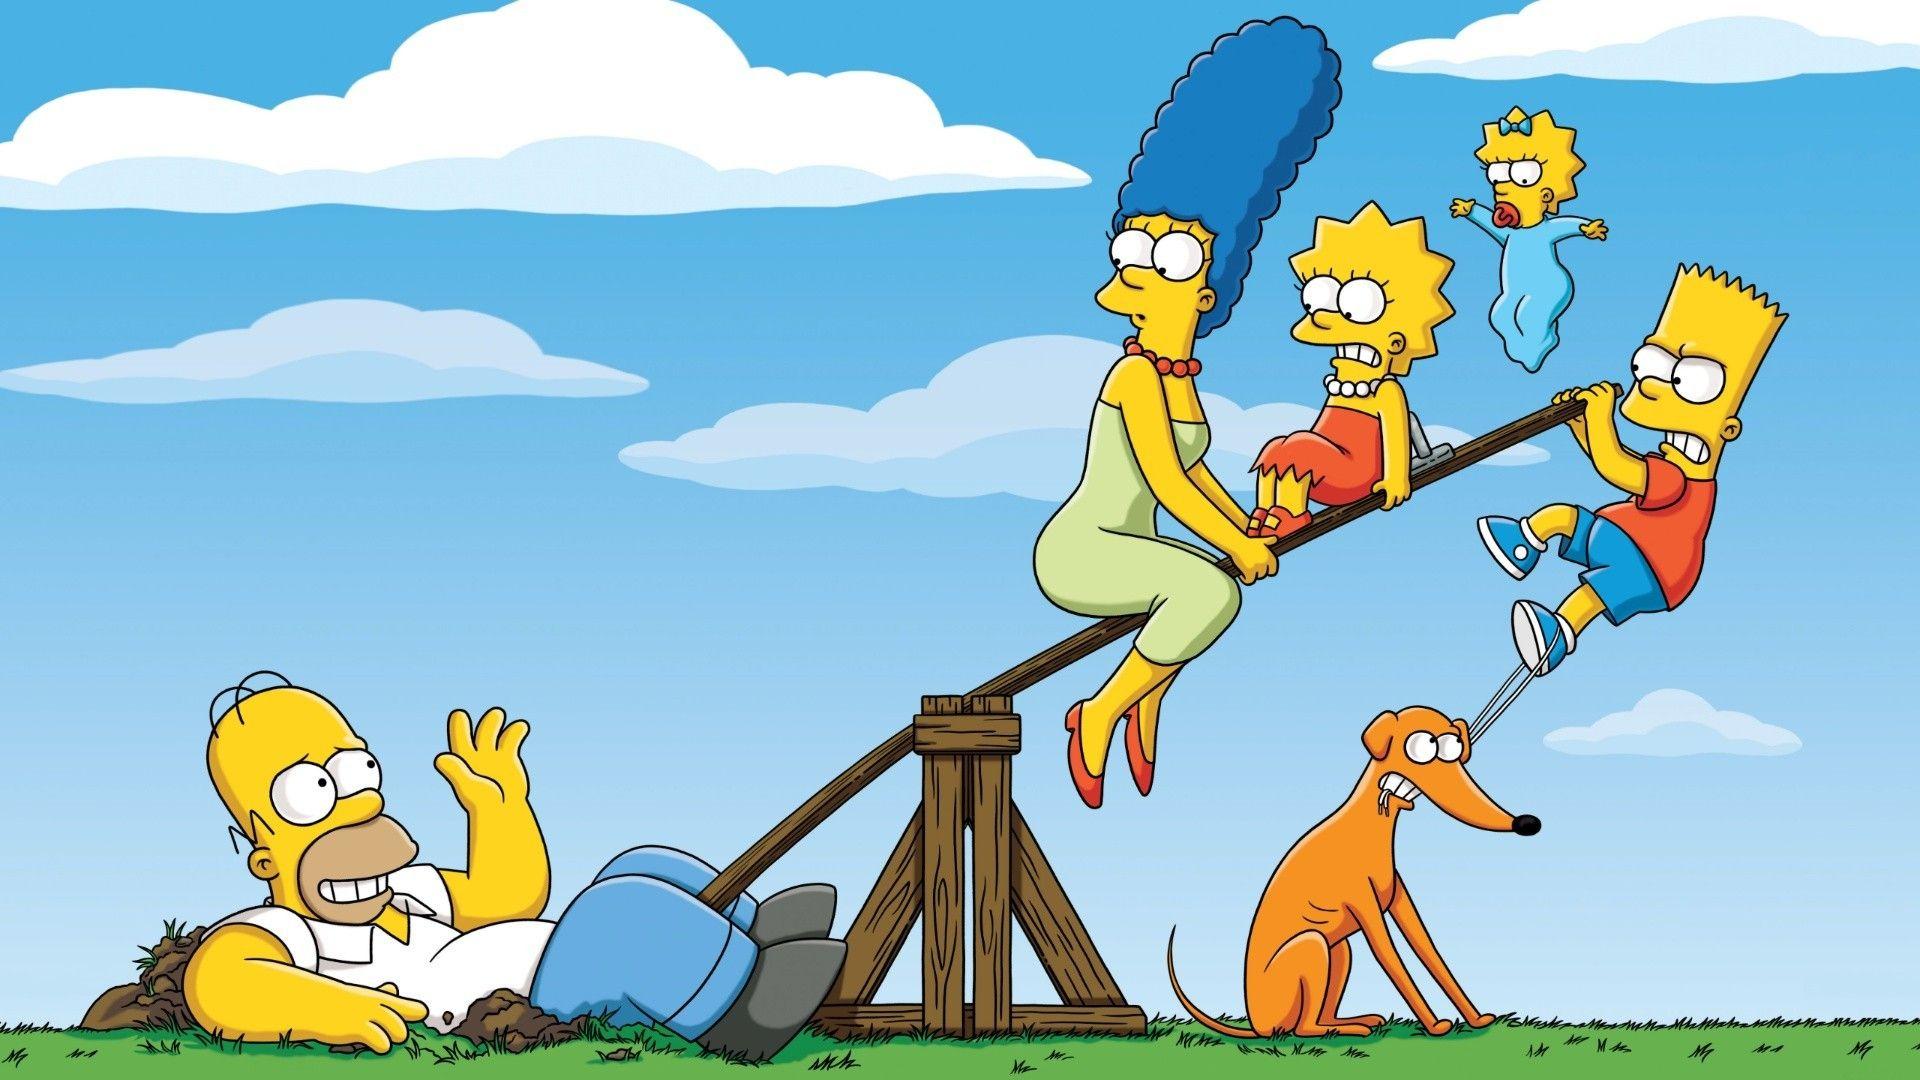 Los Simpsons Fondos De Pantalla Fondos De Escritorio 1920x1080 Id638109